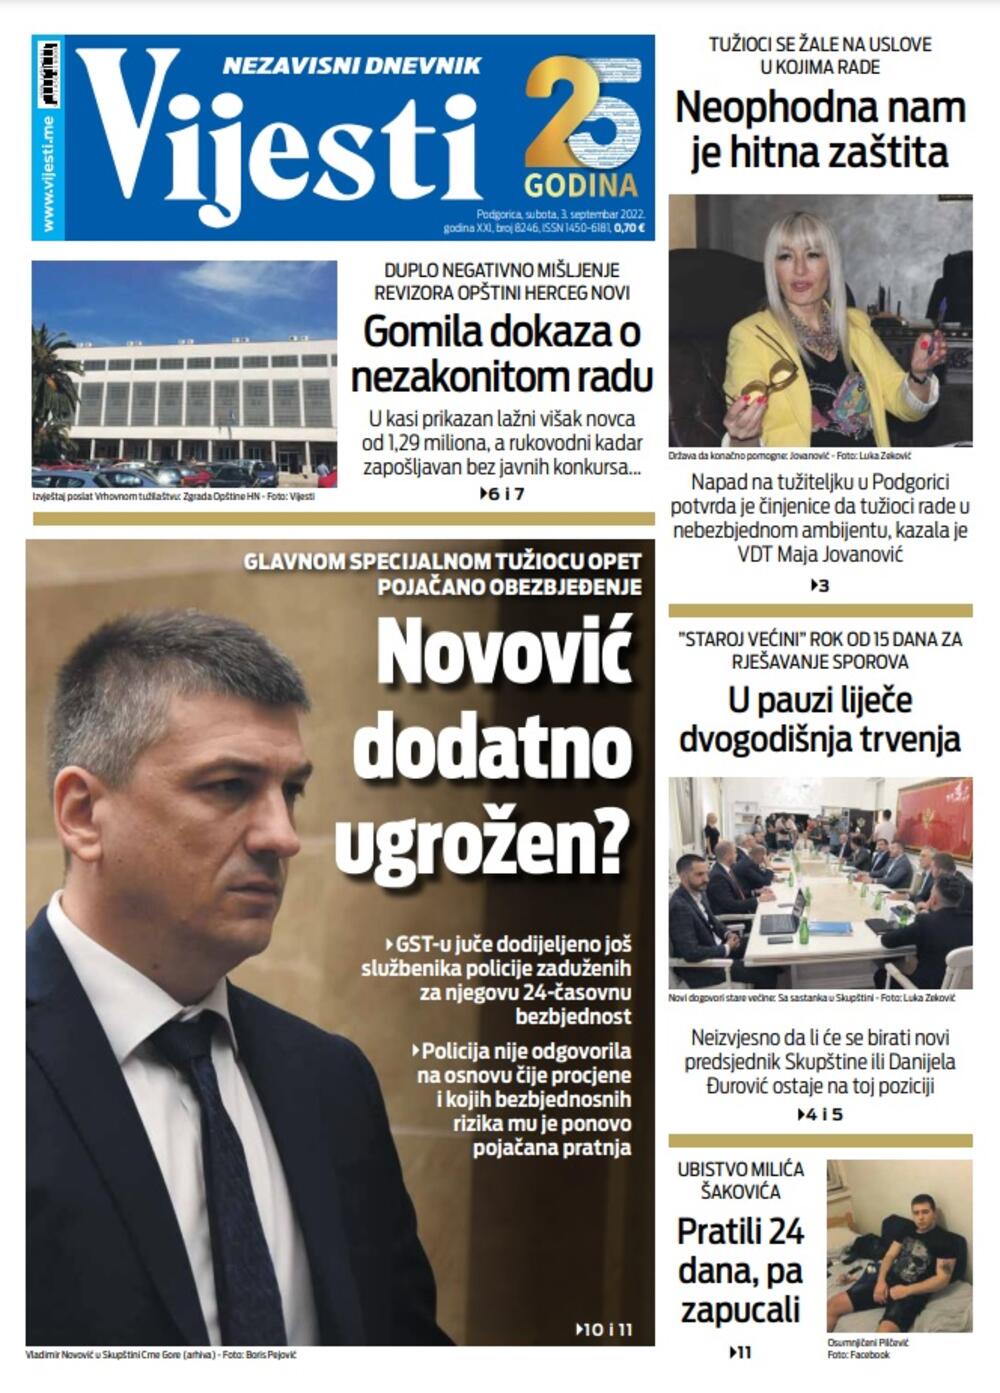 Naslovna strana "Vijesti" za 3. septembar 2022., Foto: Vijesti